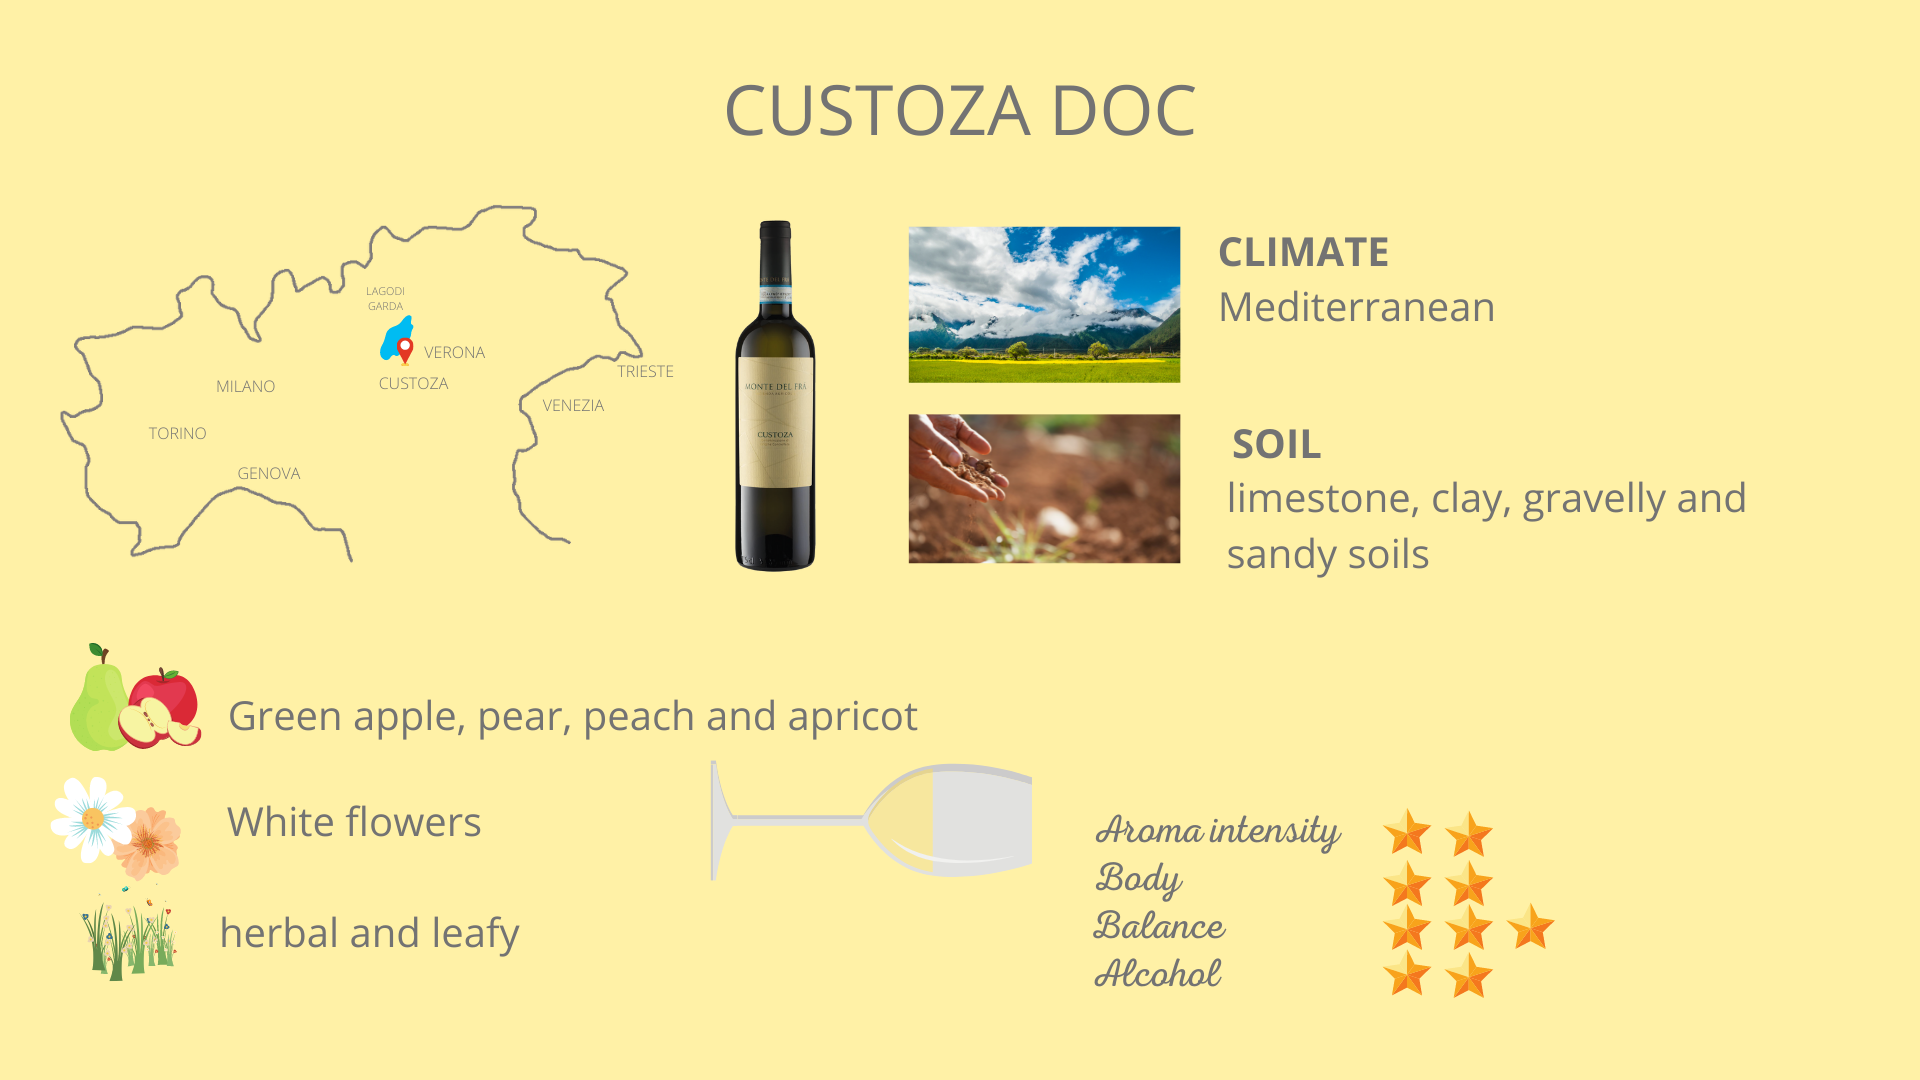 The Custoza wine